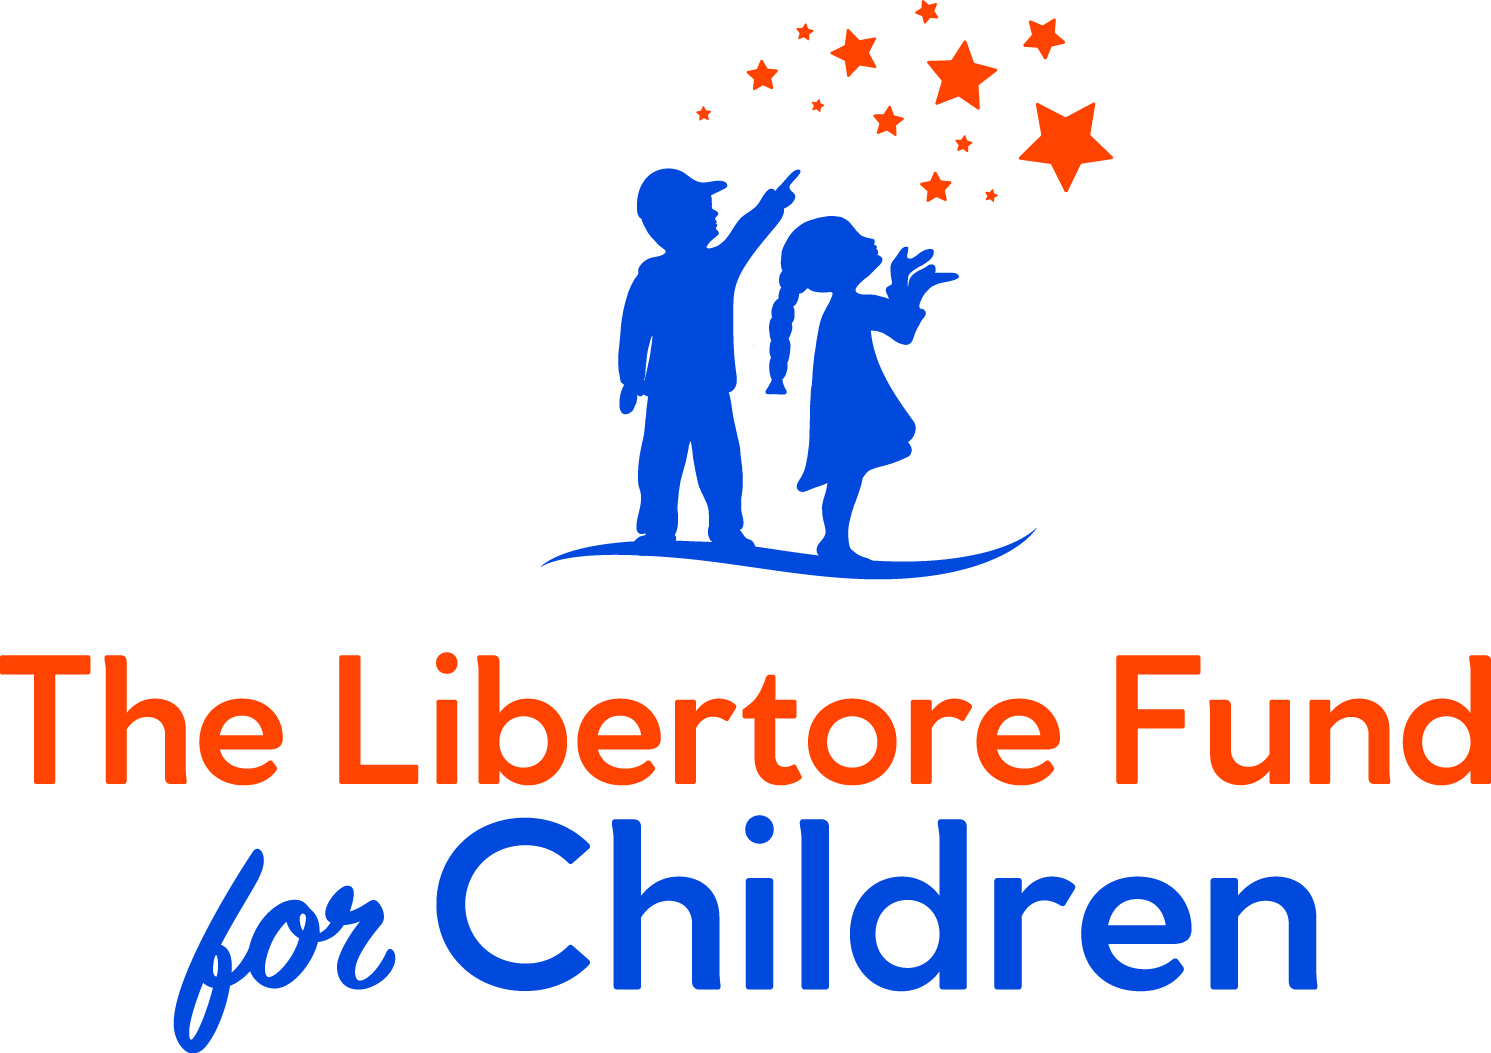 The Libertore Fund for Children